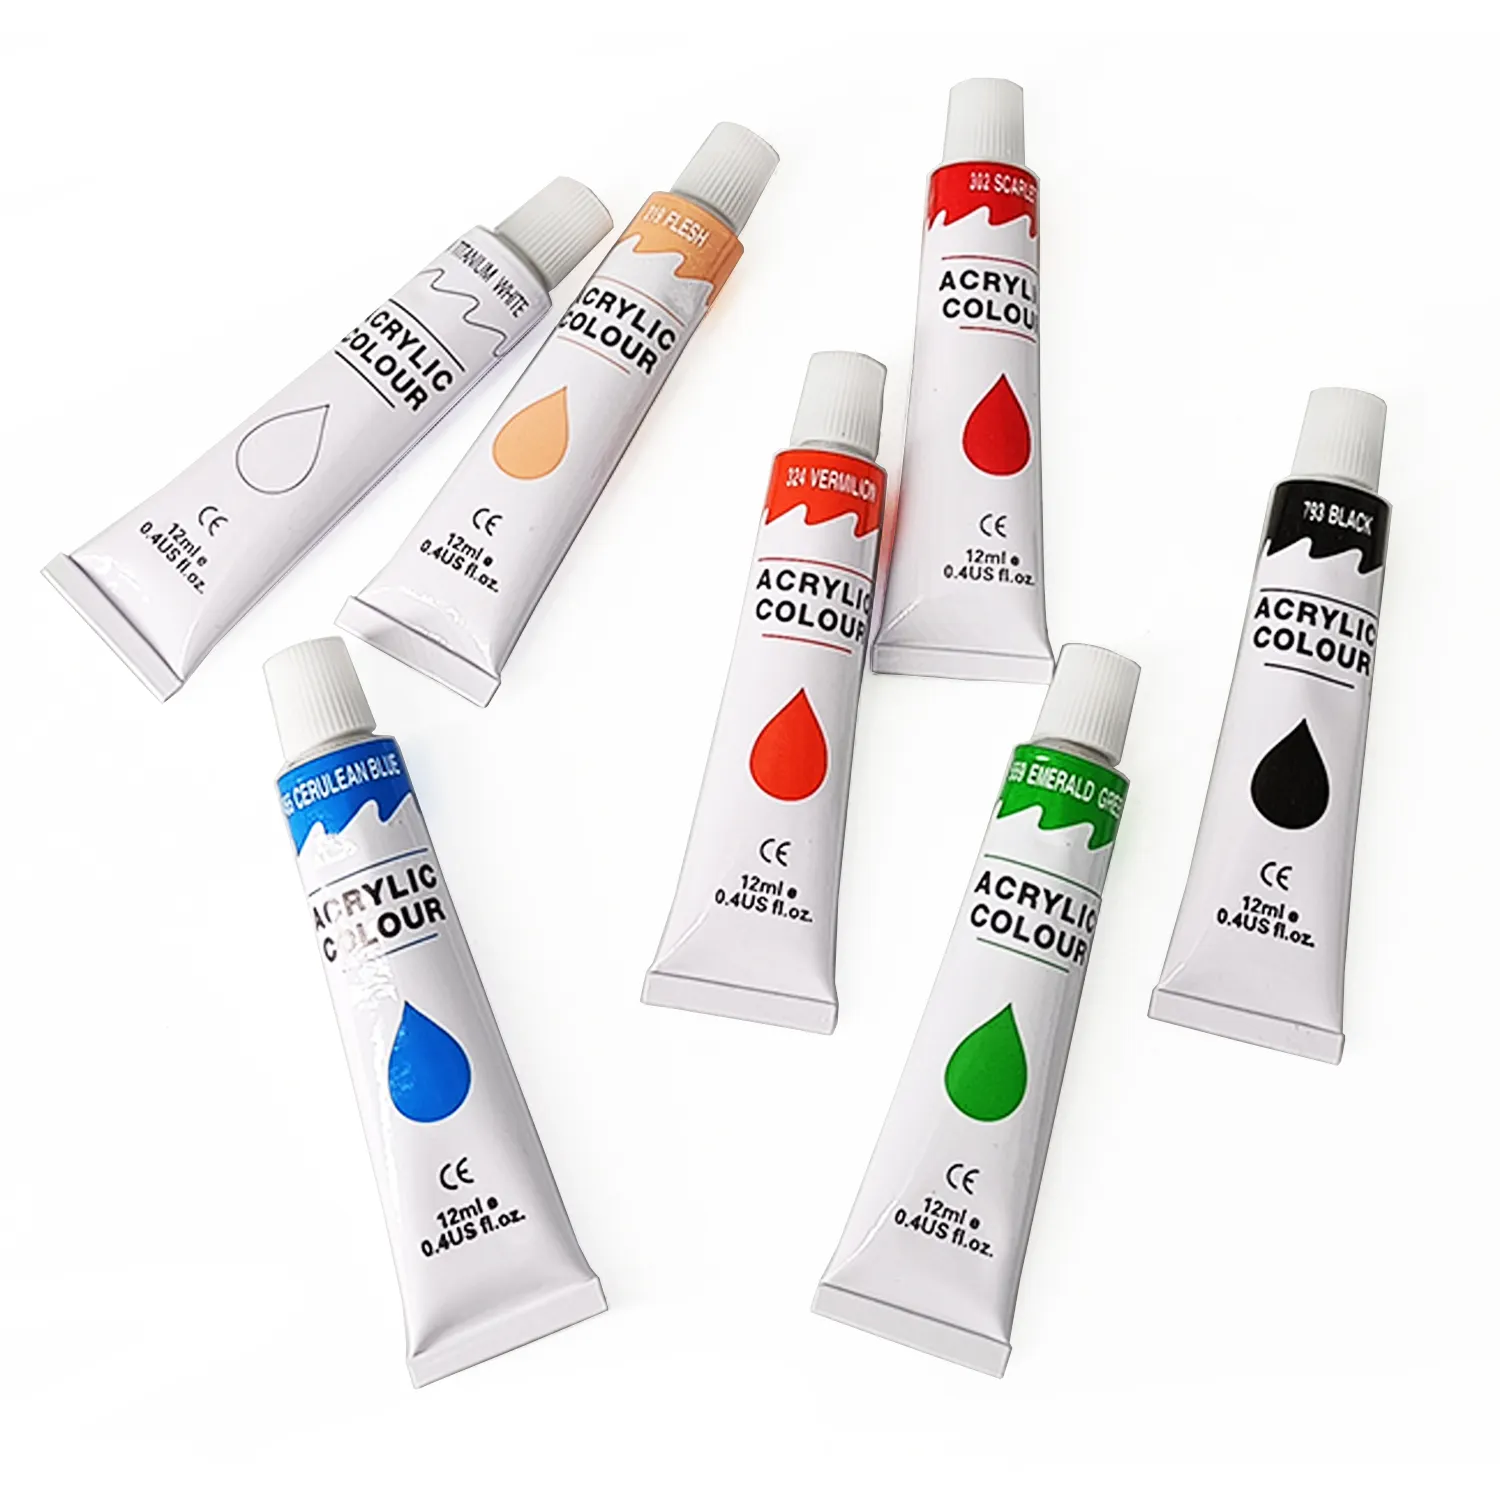 Venda quente 24 cores acrílico pintura tintas artista pintura desenho ferramenta